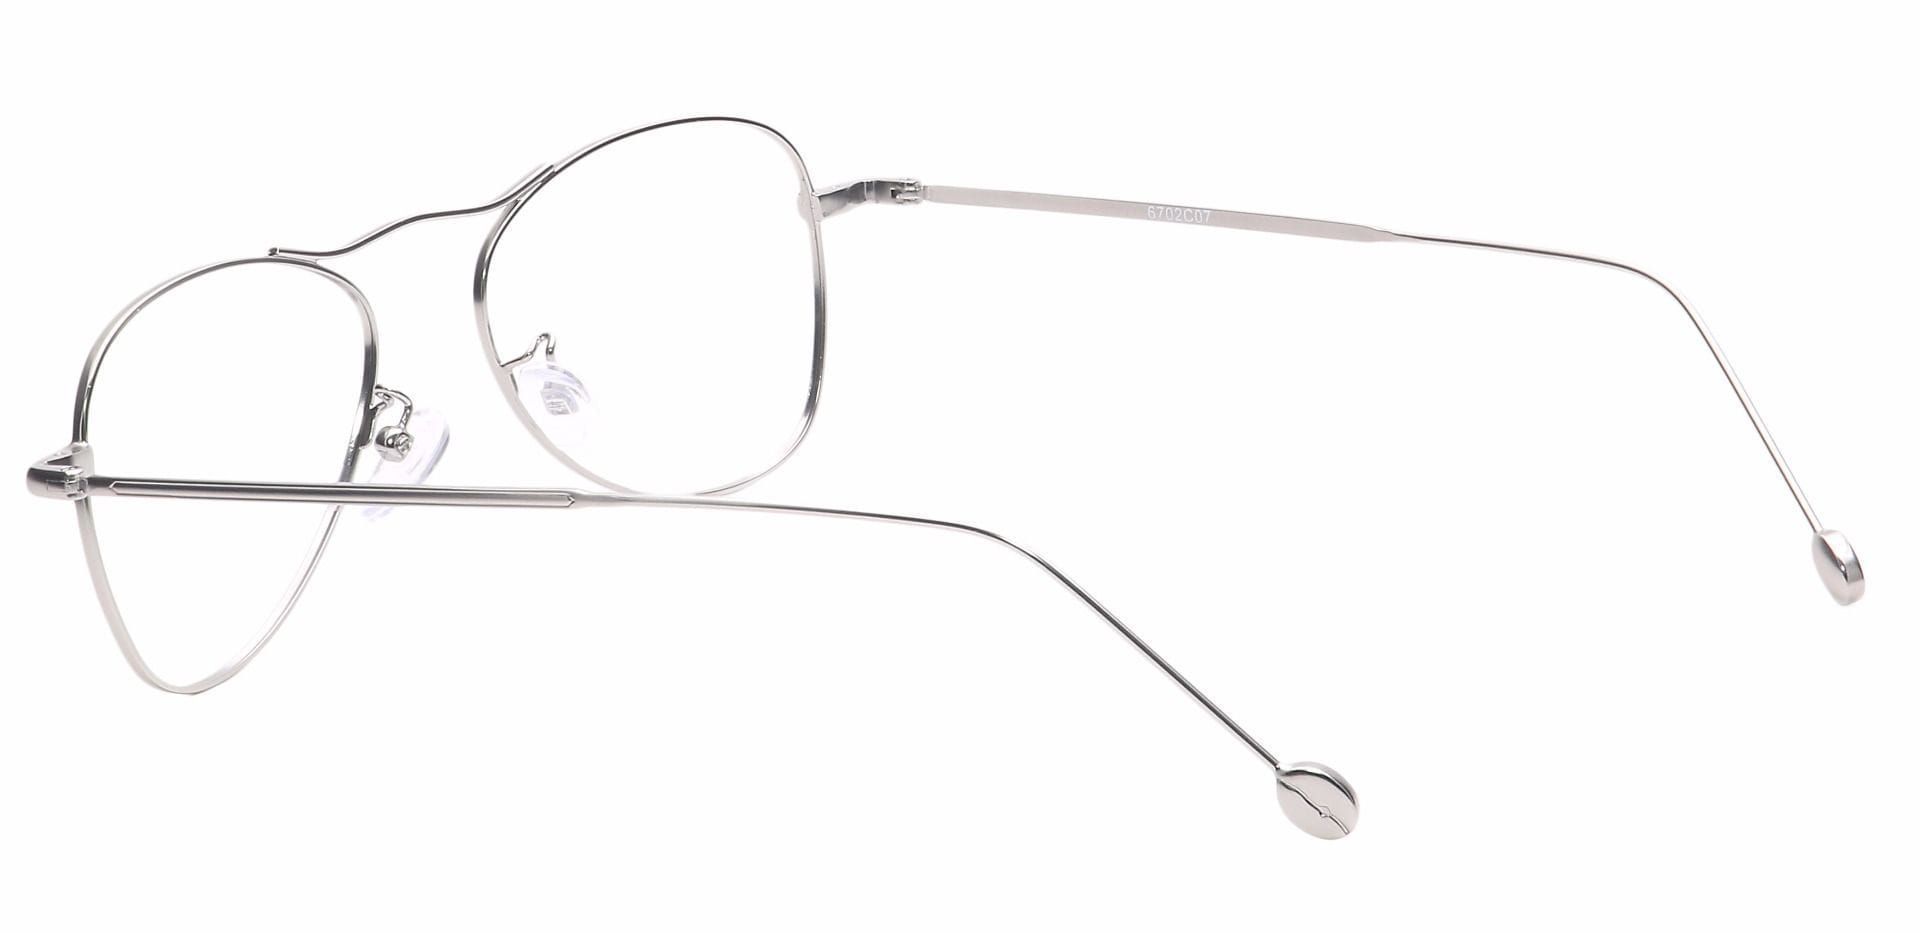 Brio Aviator Prescription Glasses - Silver